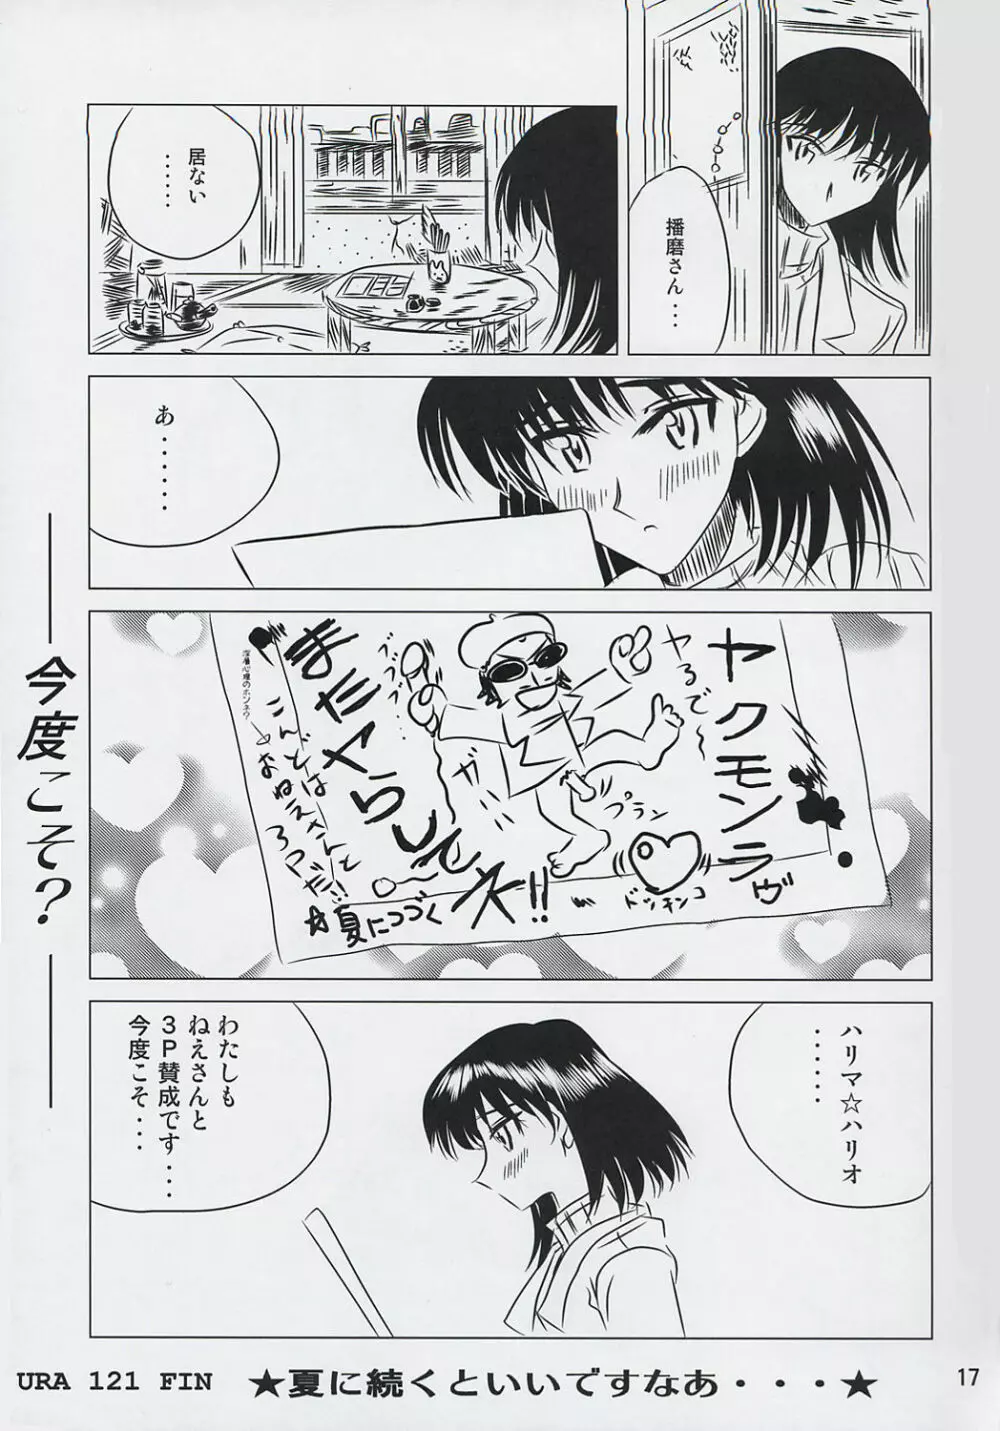 school ちゃんぷるー 6 - page16